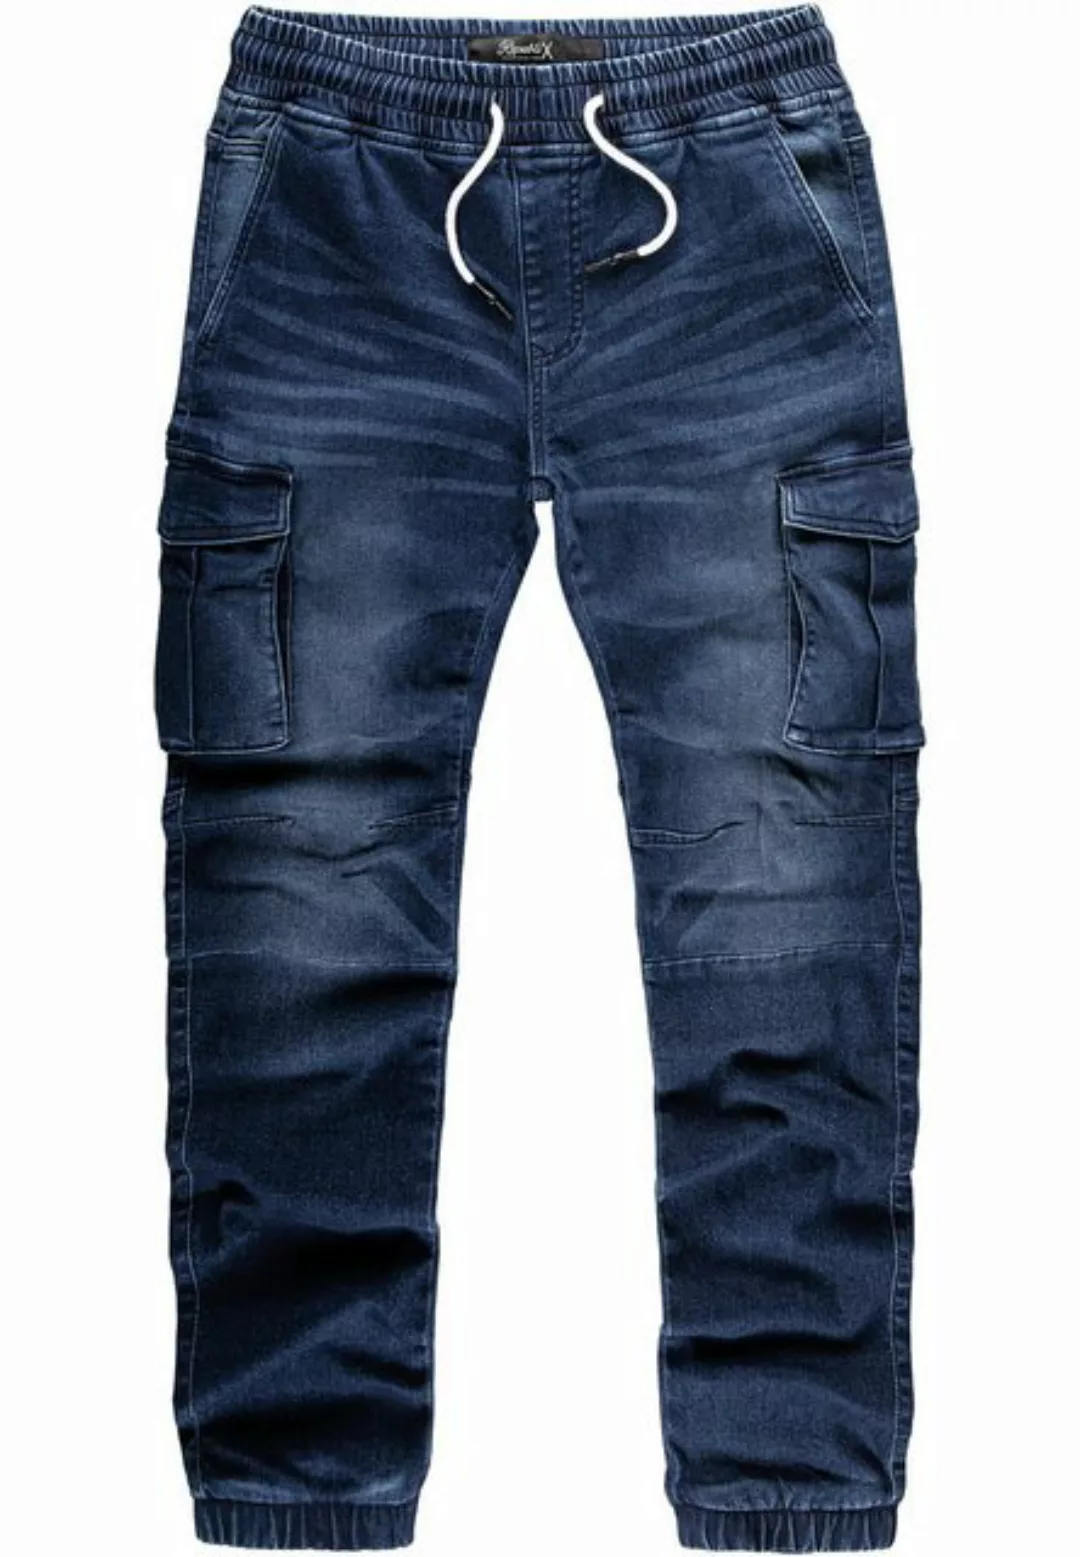 REPUBLIX Cargohose CILIAN Herren Sweathose in Stretch Denim Jeans günstig online kaufen